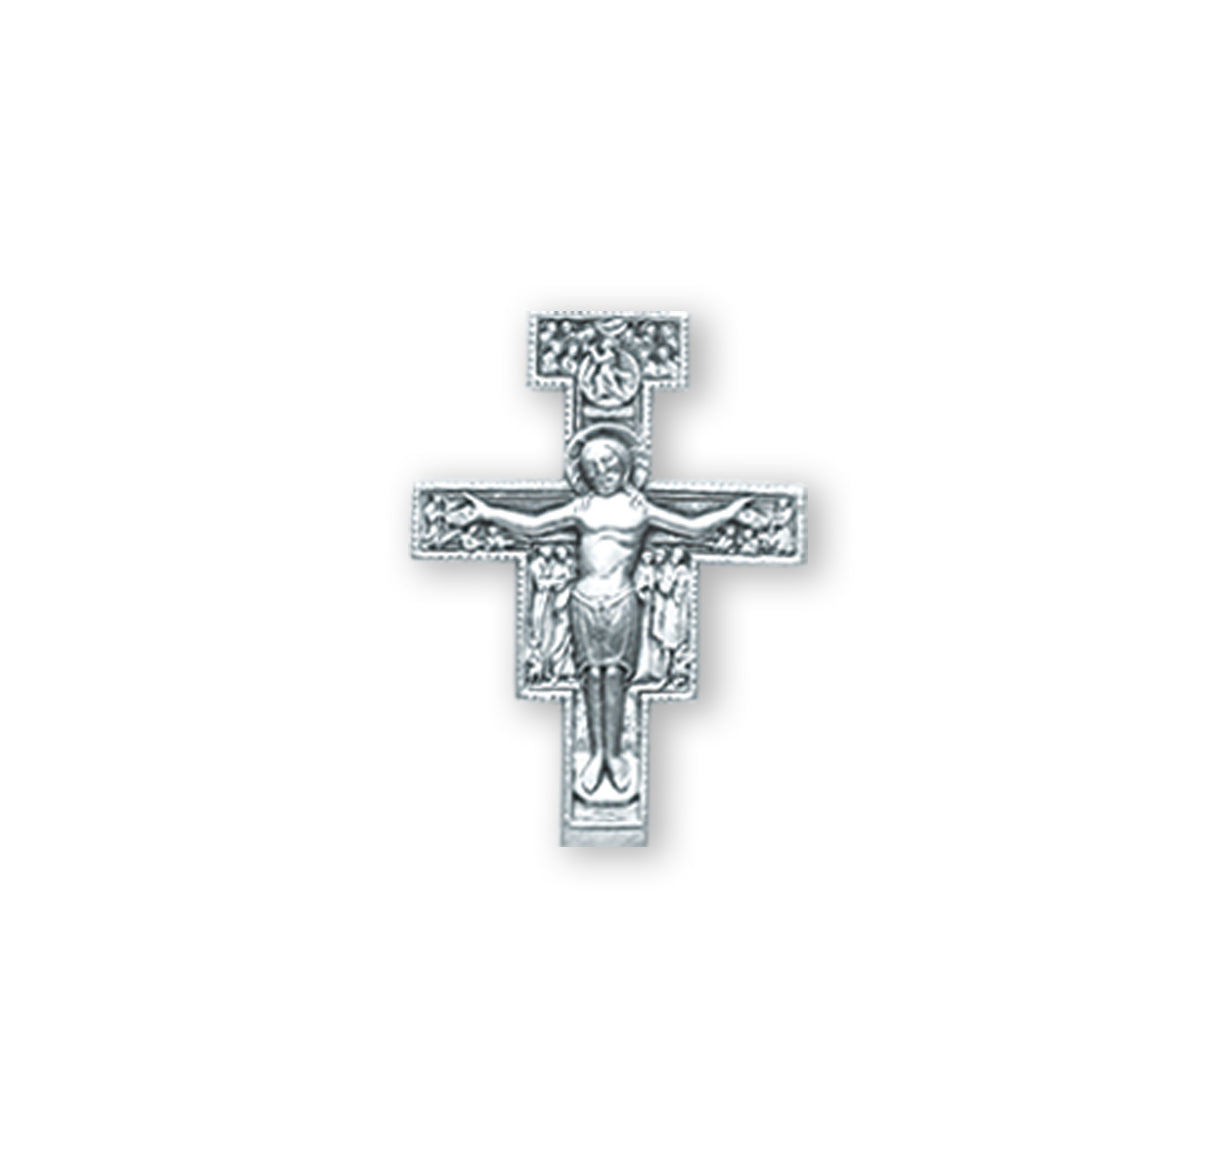 San Damiano Crucifix Lapel Pin